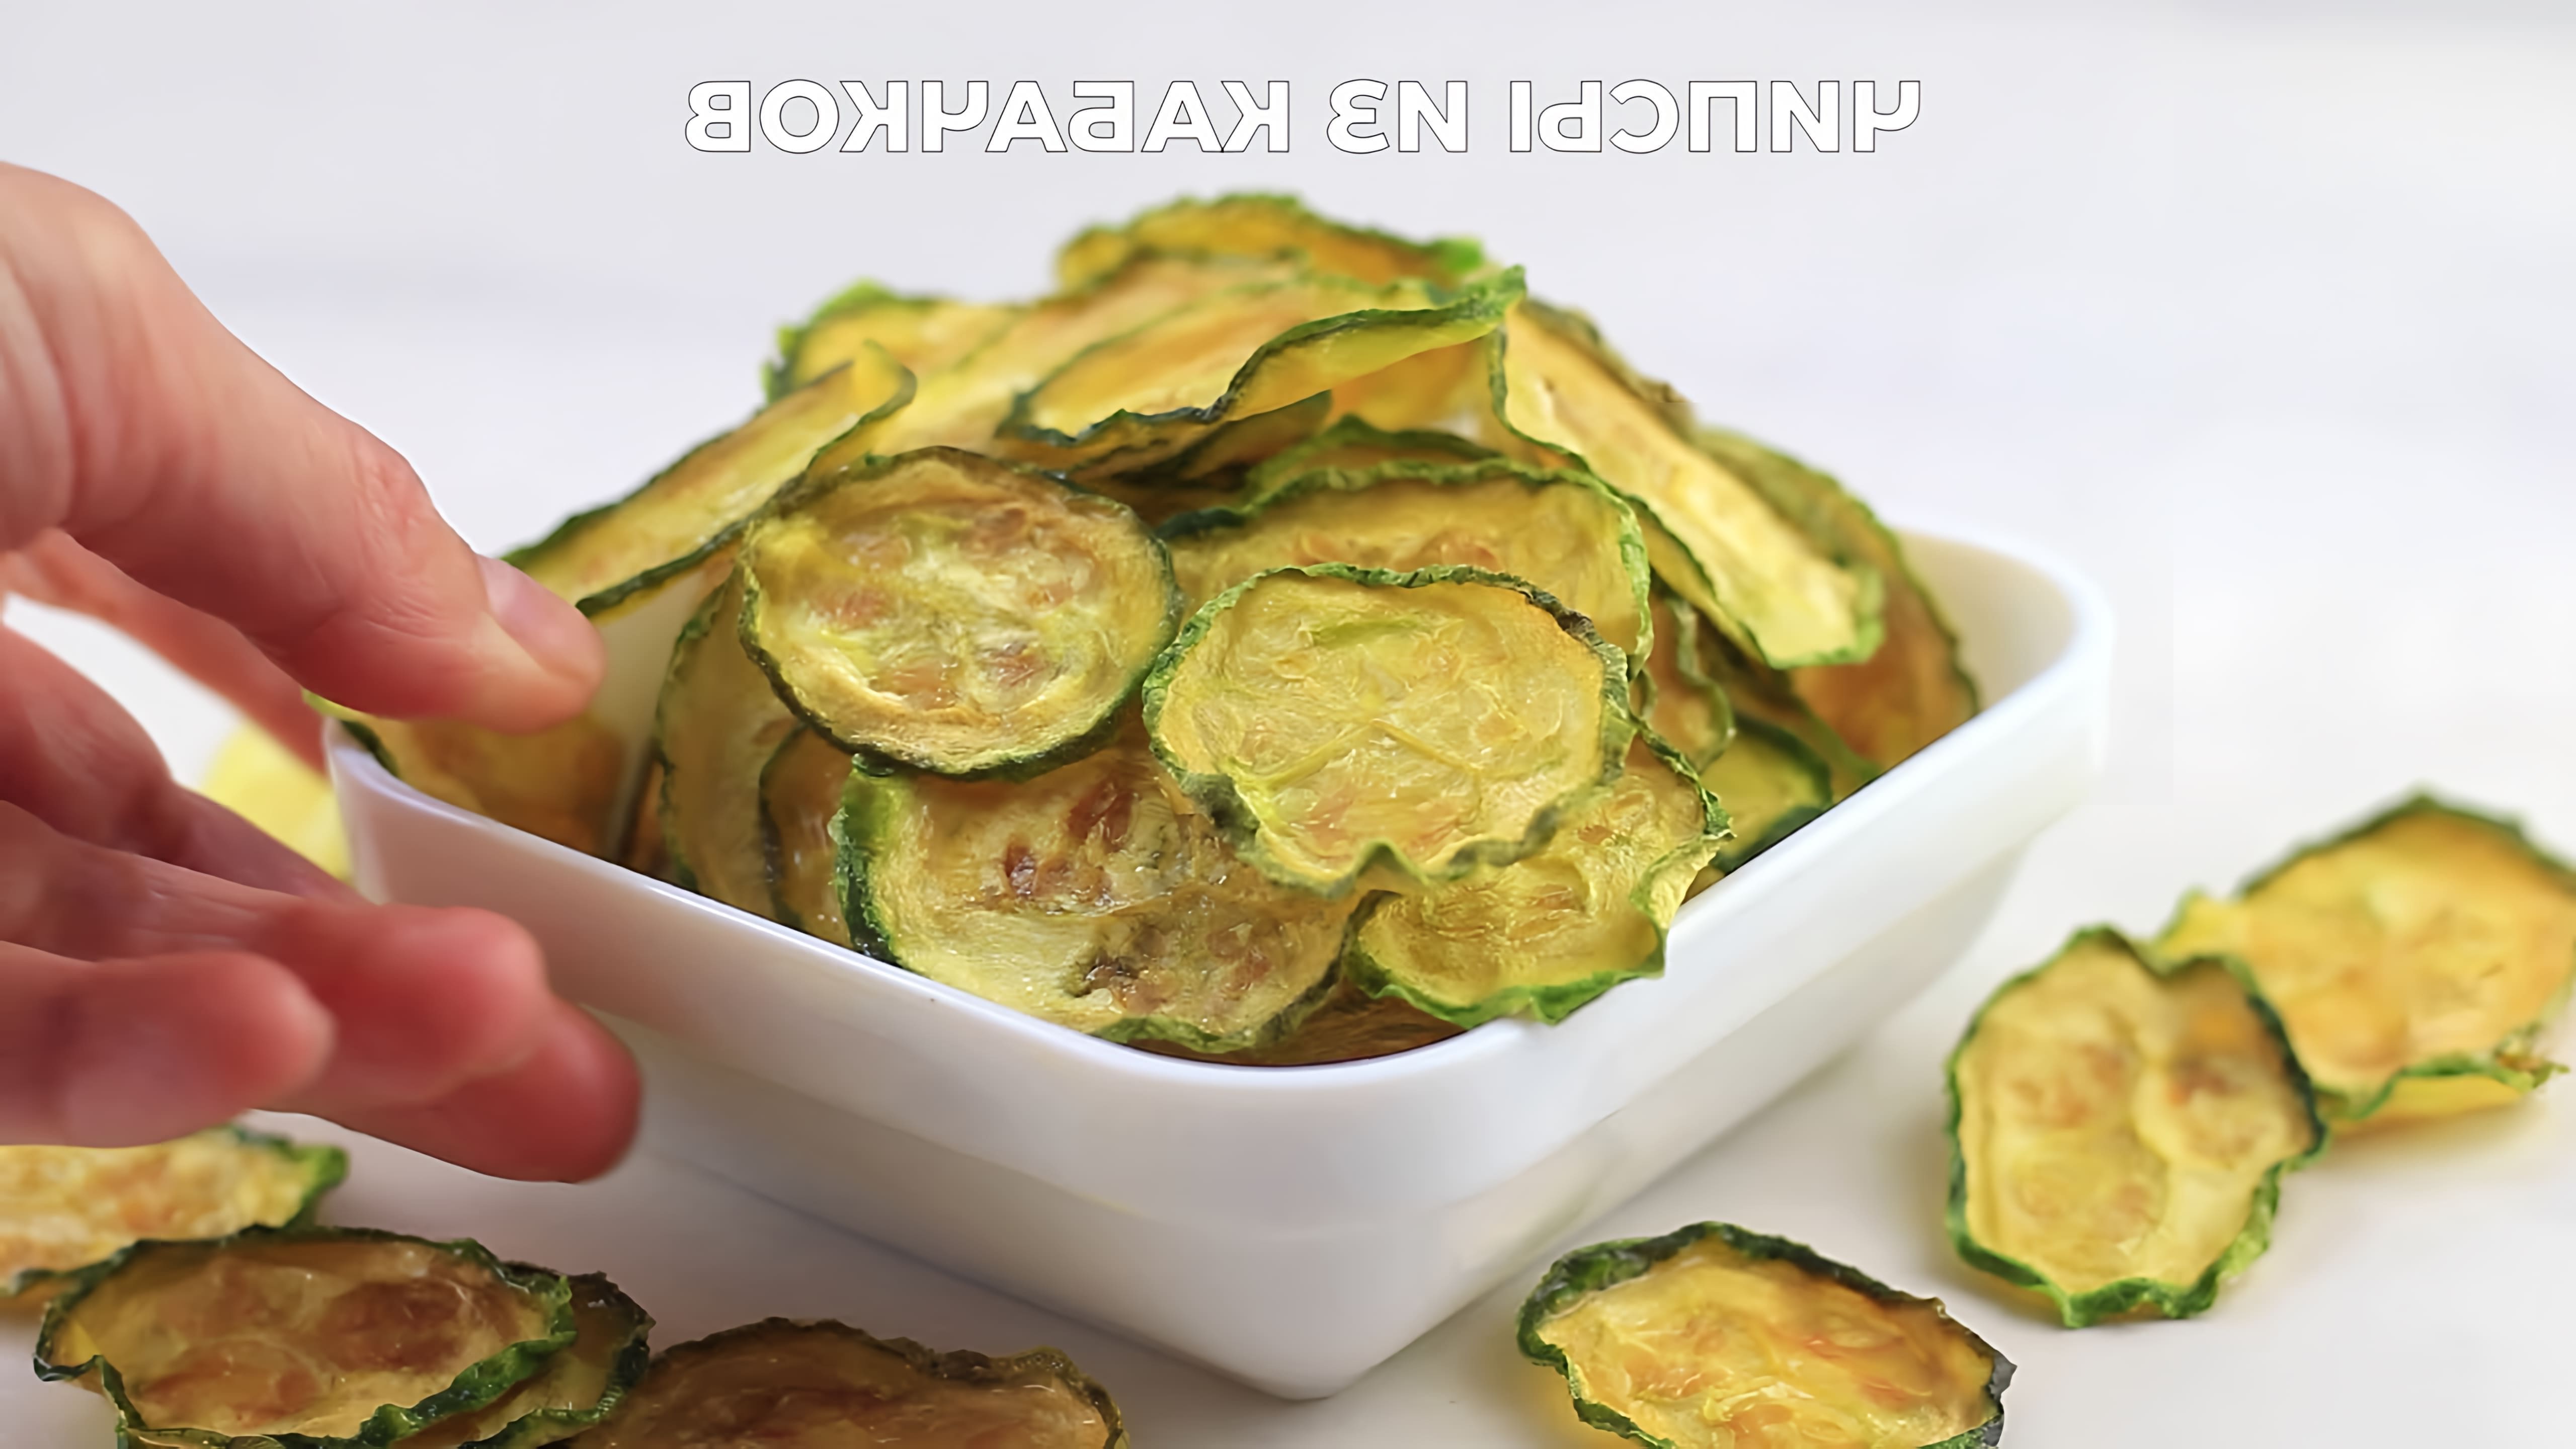 "Полезный перекус: чипсы из кабачков" - это видео-ролик, который рассказывает о том, как приготовить вкусные и полезные чипсы из кабачков